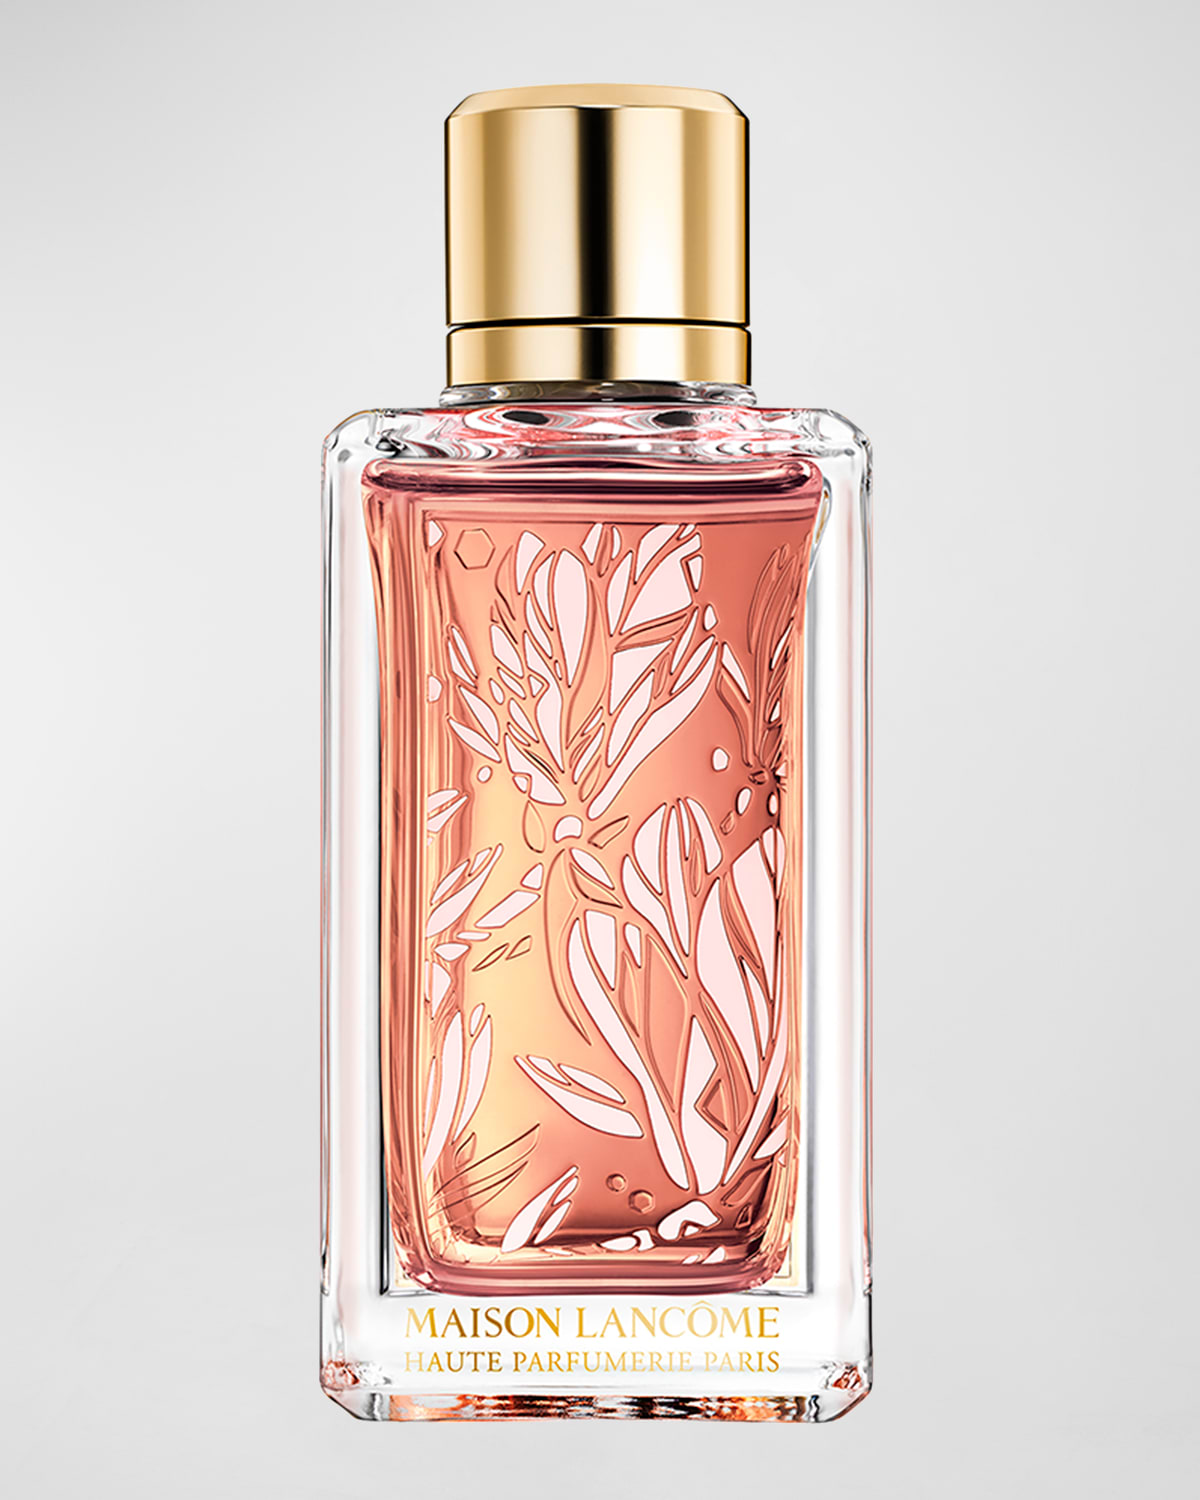 Maison Lancome Magnolia Rosae Eau de Parfum, 3.4 oz.